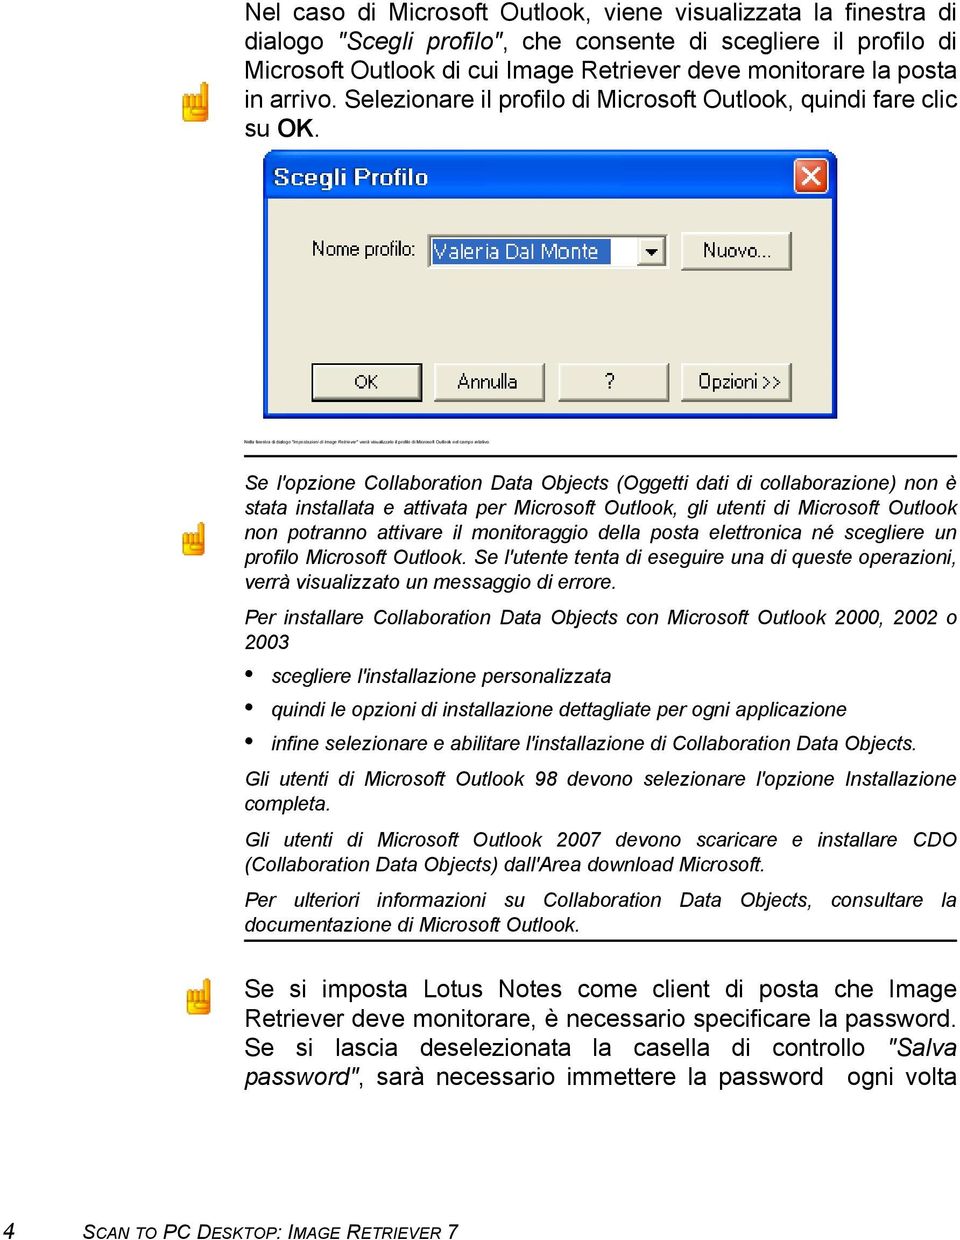 Nella finestra di dialogo "Impostazioni di Image Retriever" verrà visualizzato il profilo di Microsoft Outlook nel campo relativo.